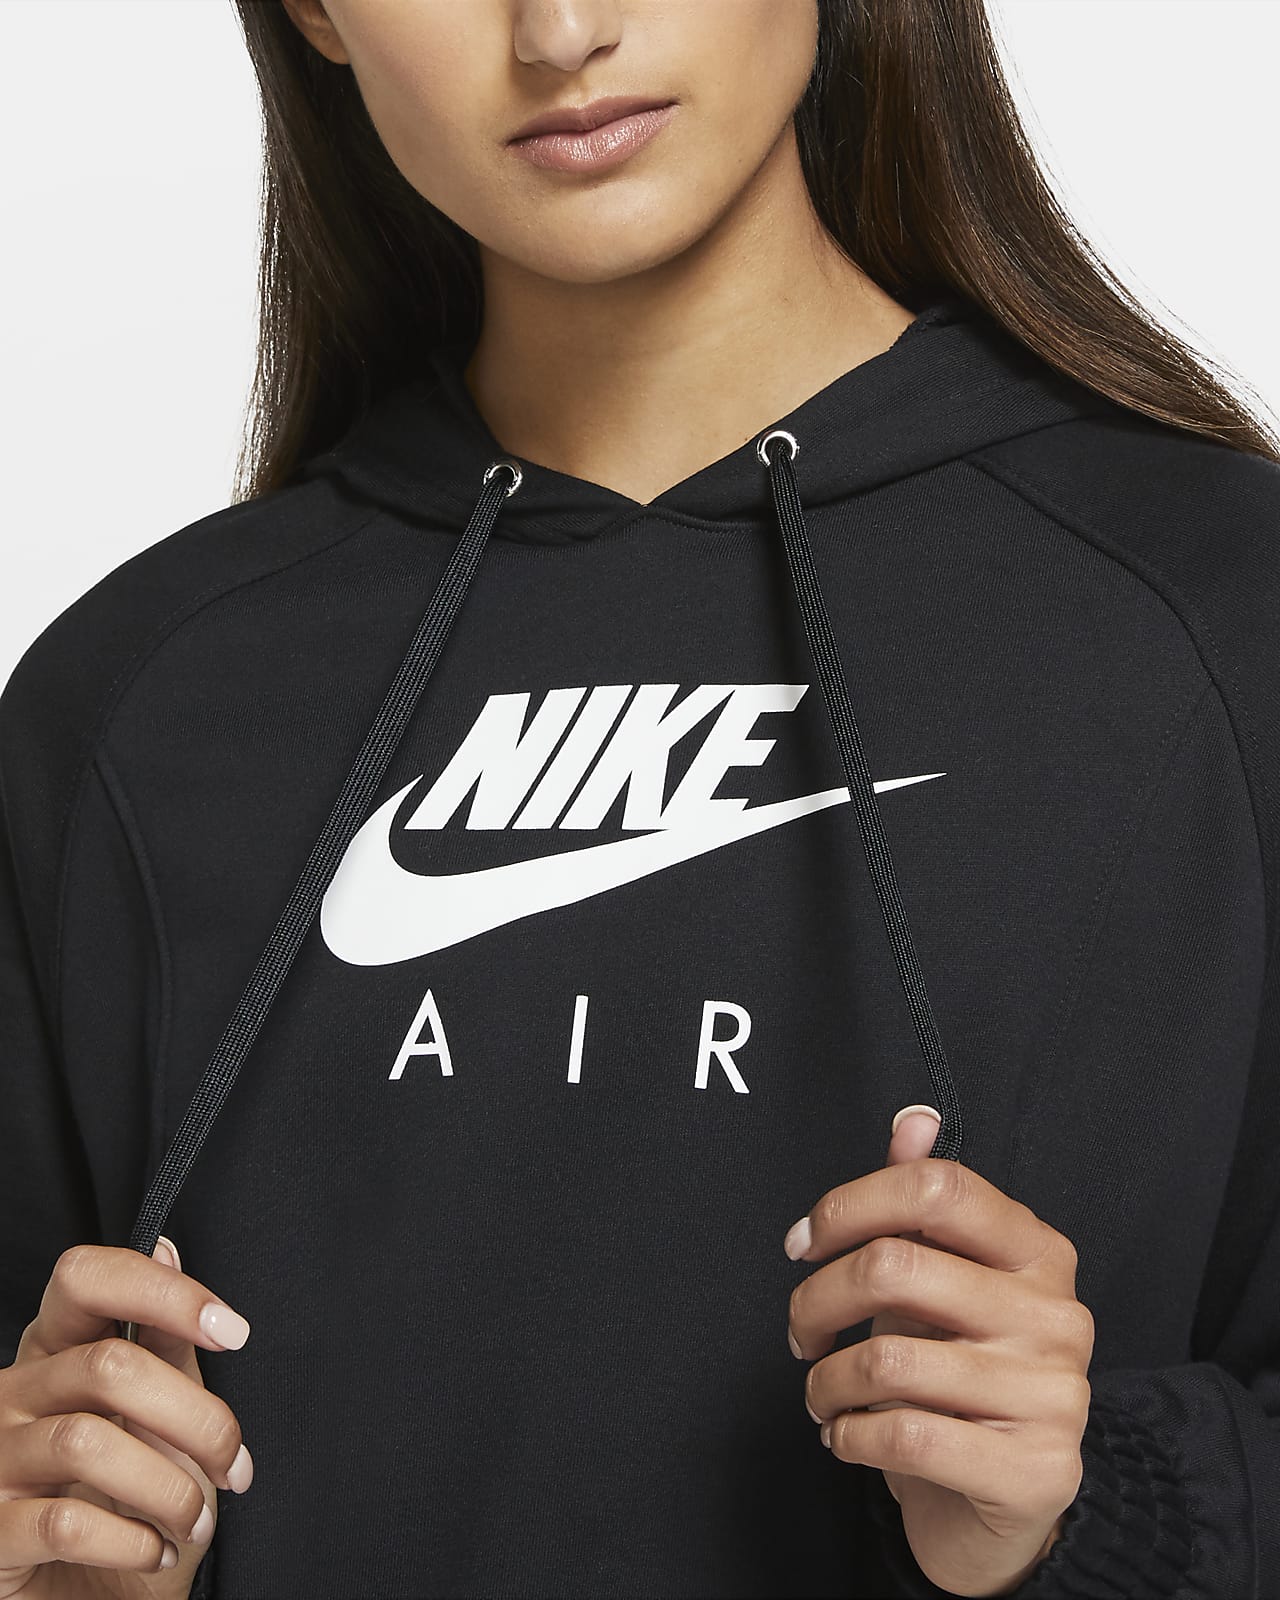 nike air women's hoodie